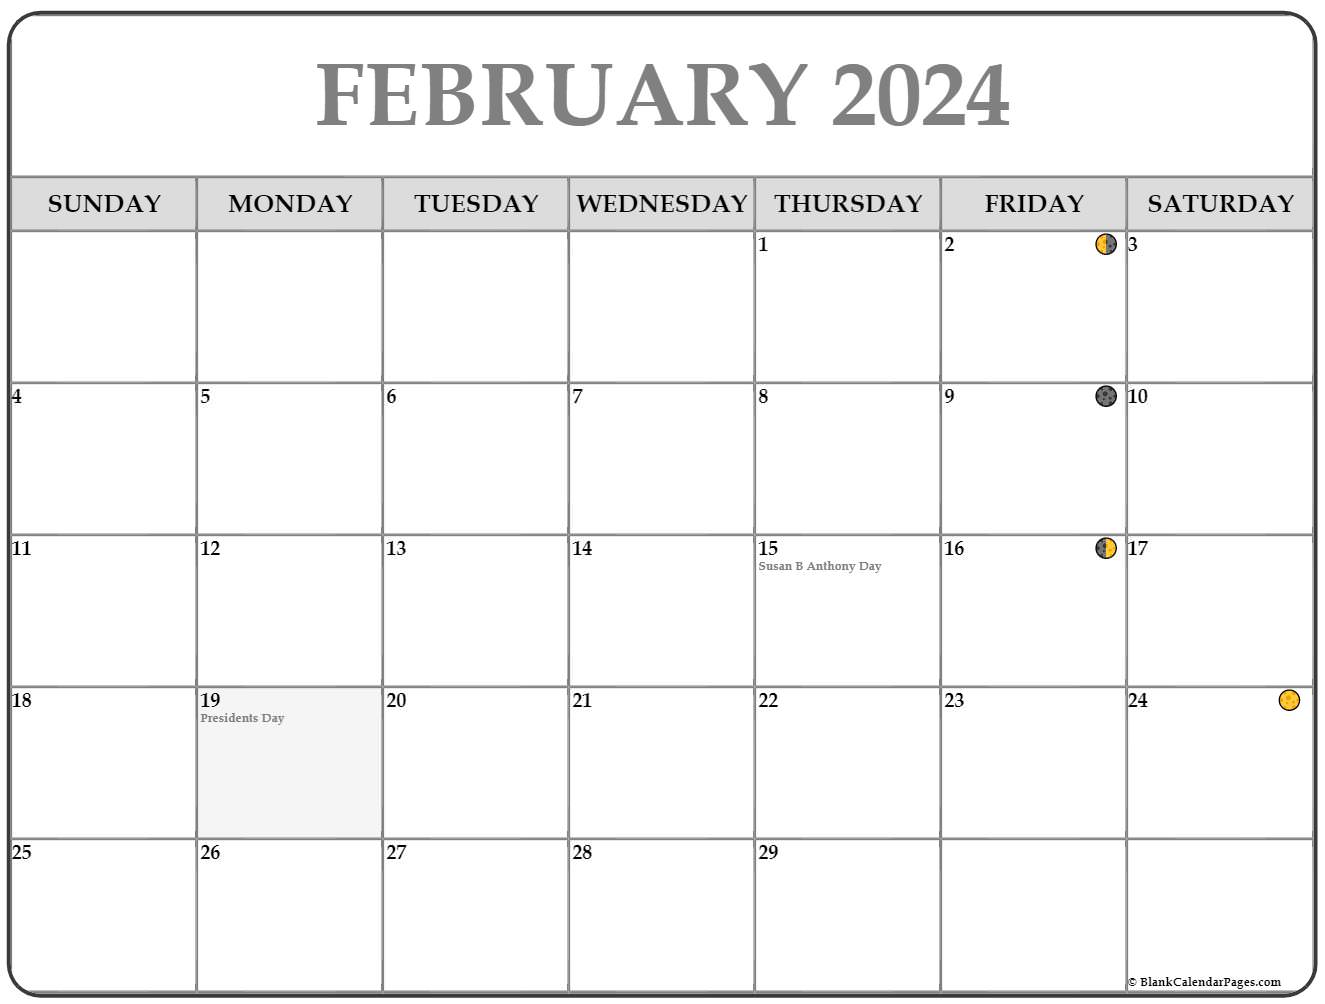 February Moon Calendar 2022 February 2022 Lunar Calendar | Moon Phase Calendar